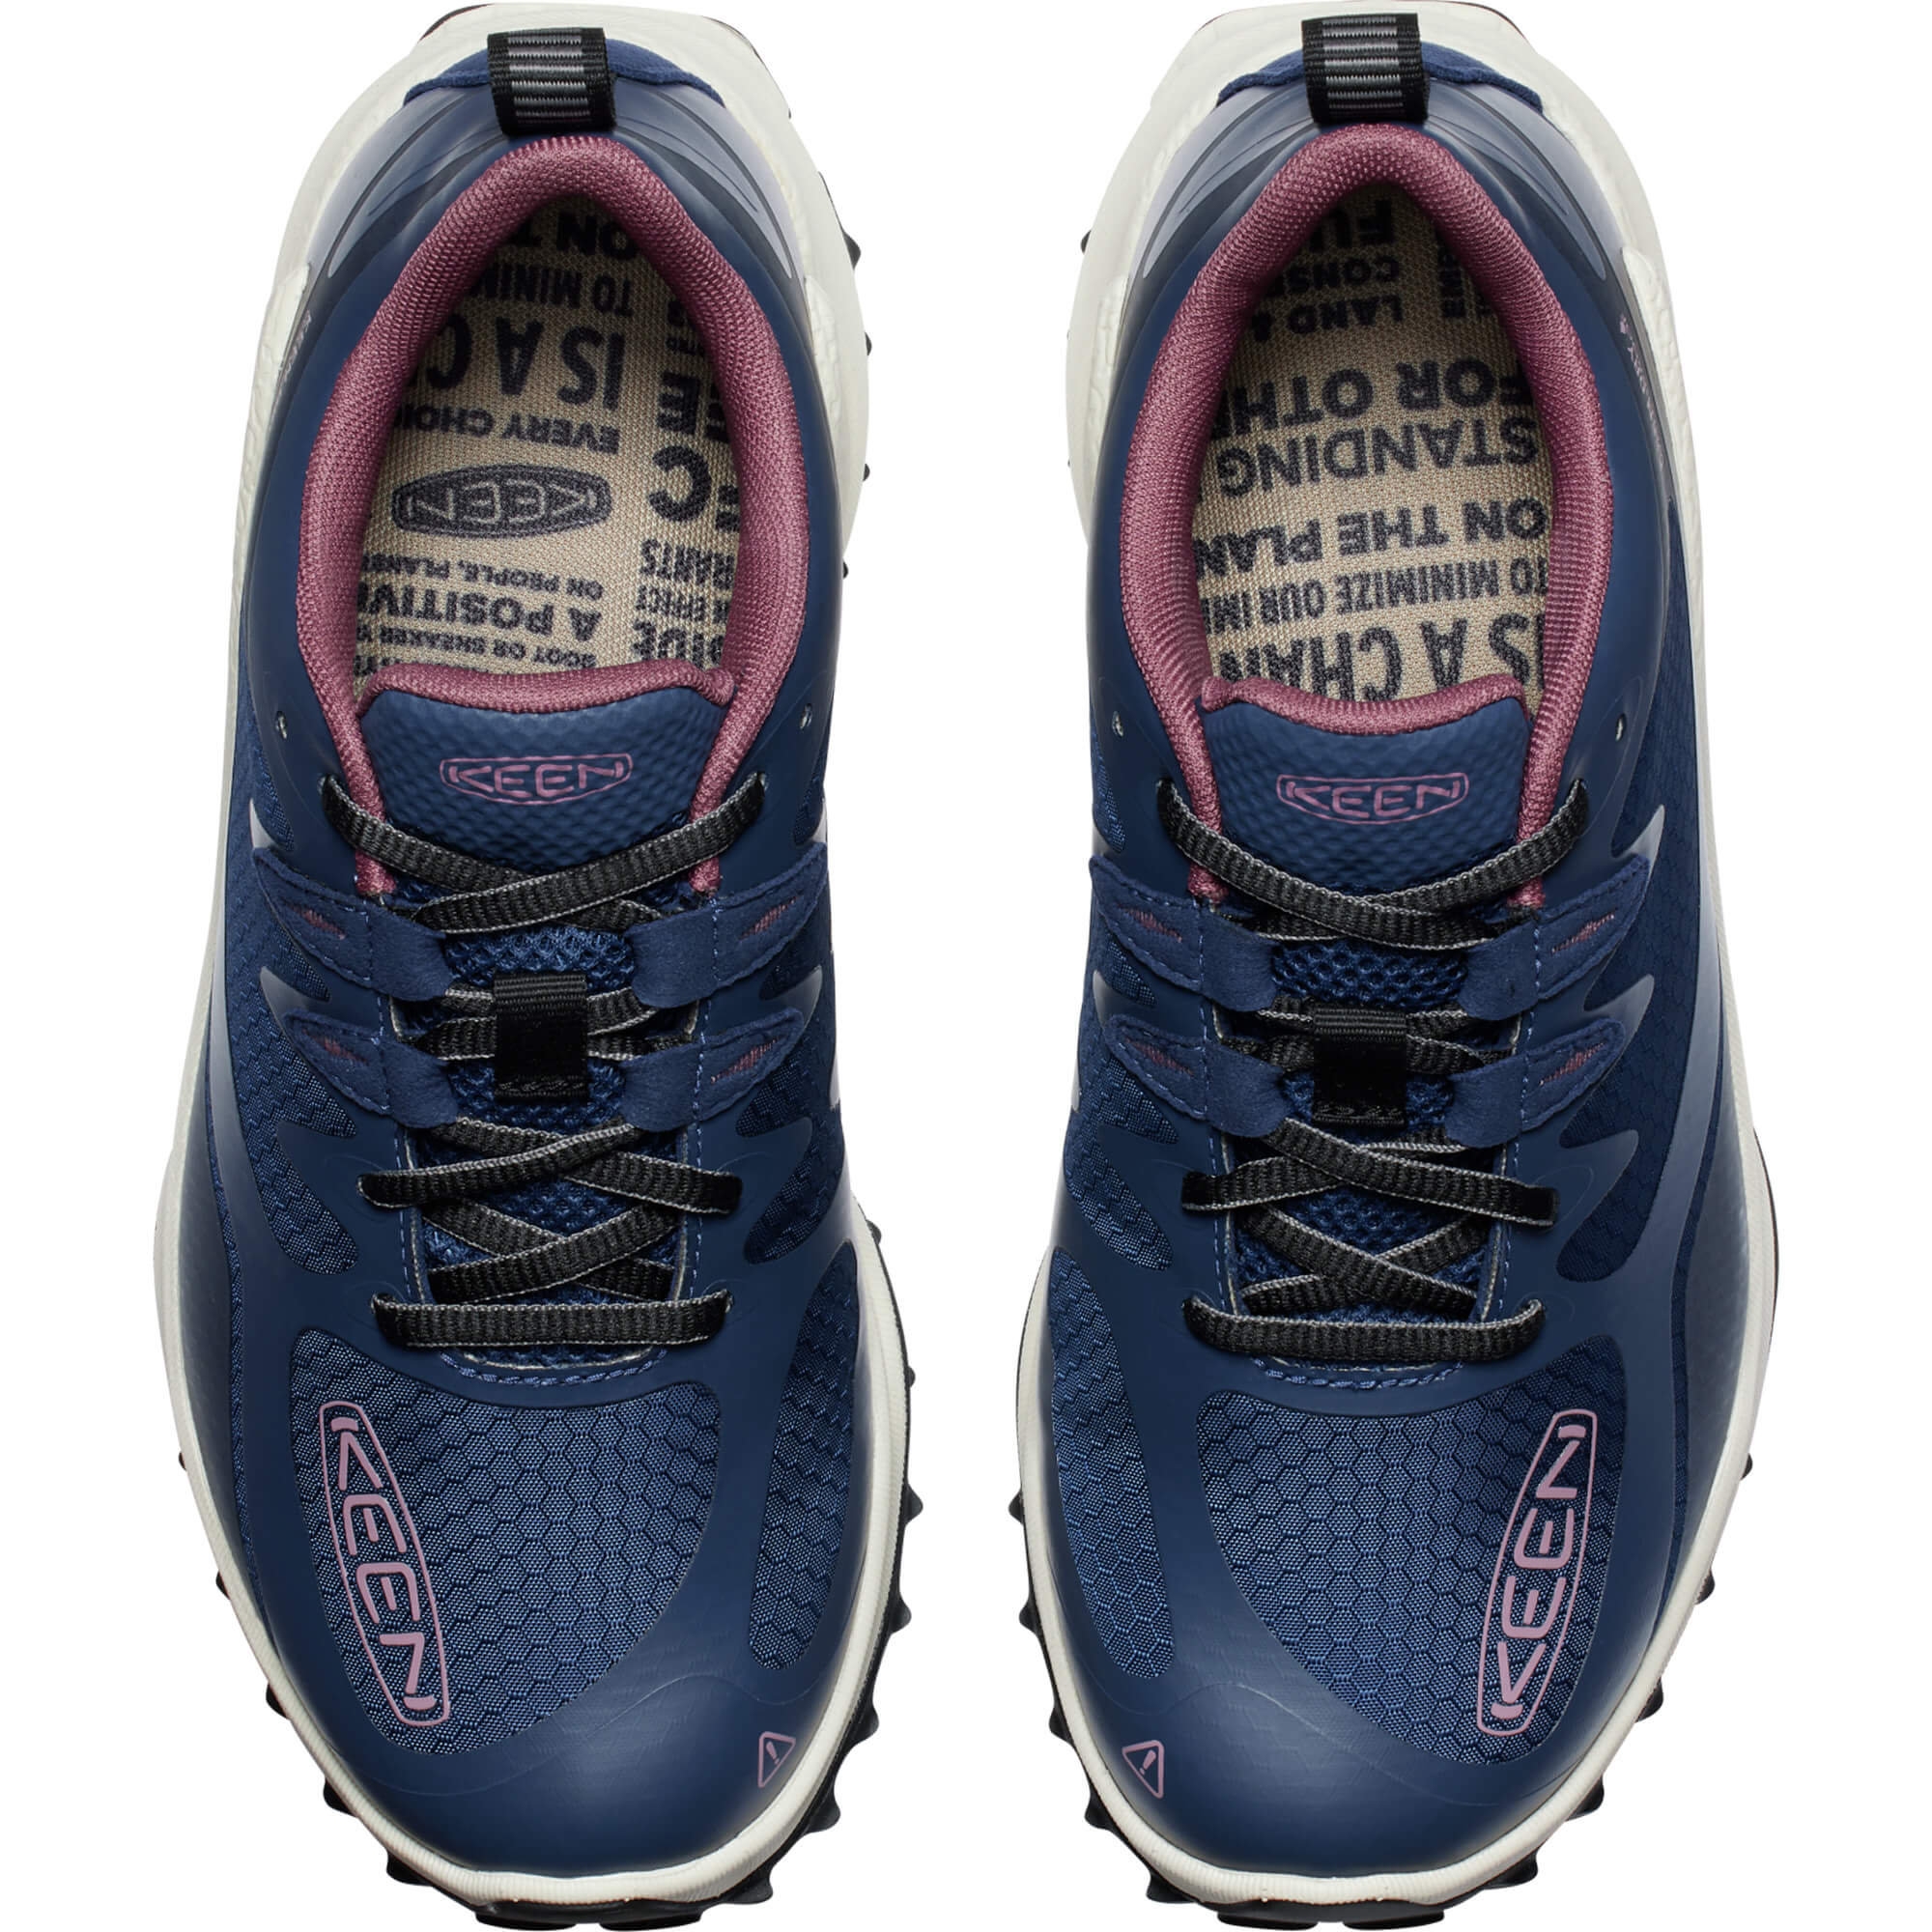 Keen Zionic Waterproof Women's Hiking Shoes